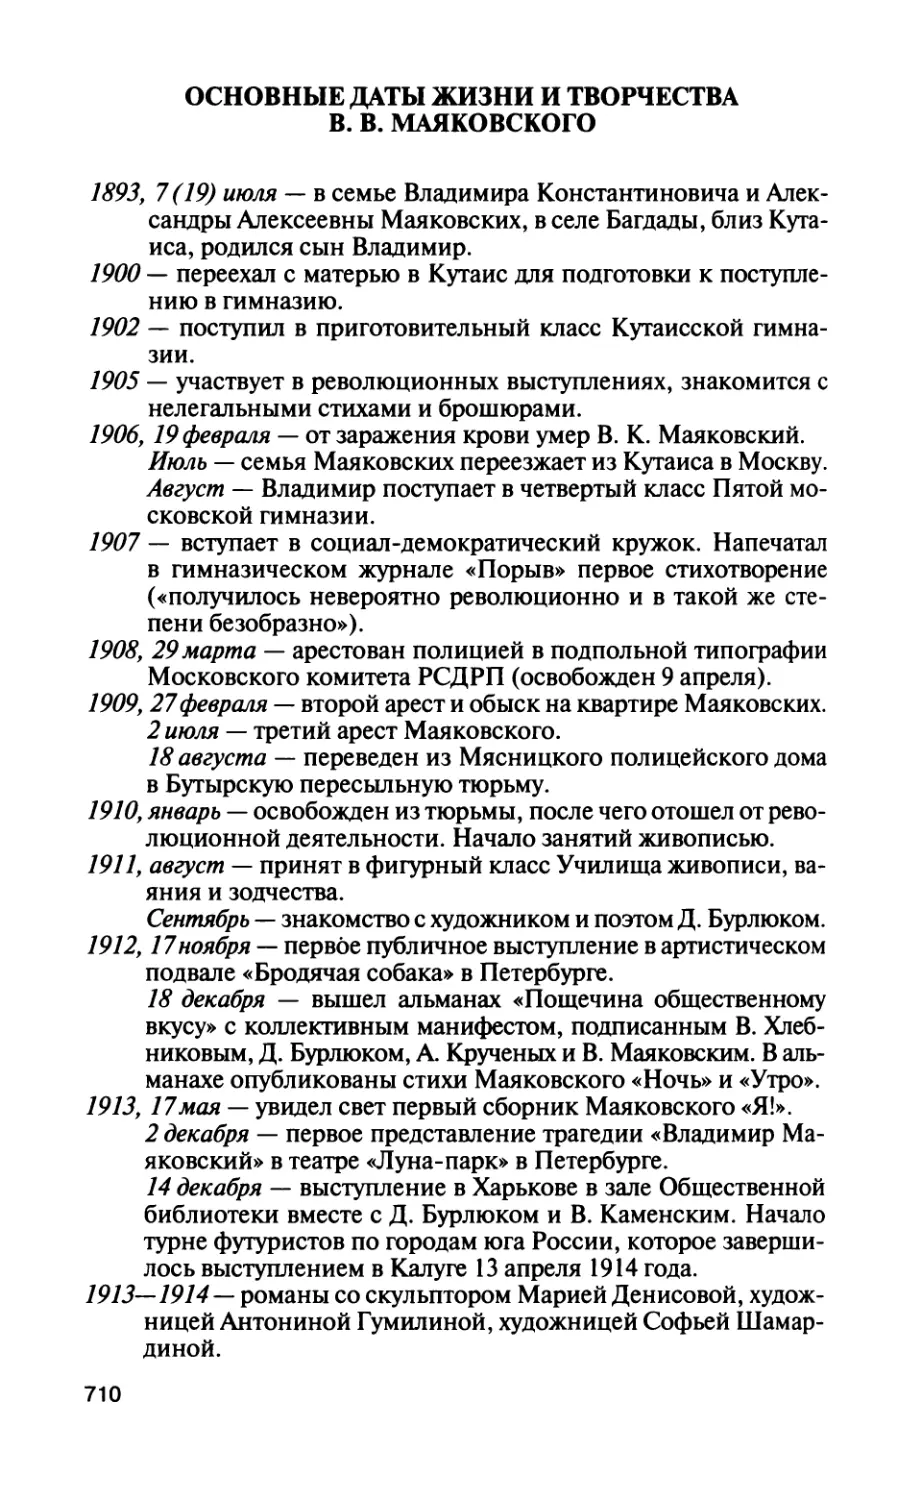 Основные даты жизни и творчества В. В. Маяковского